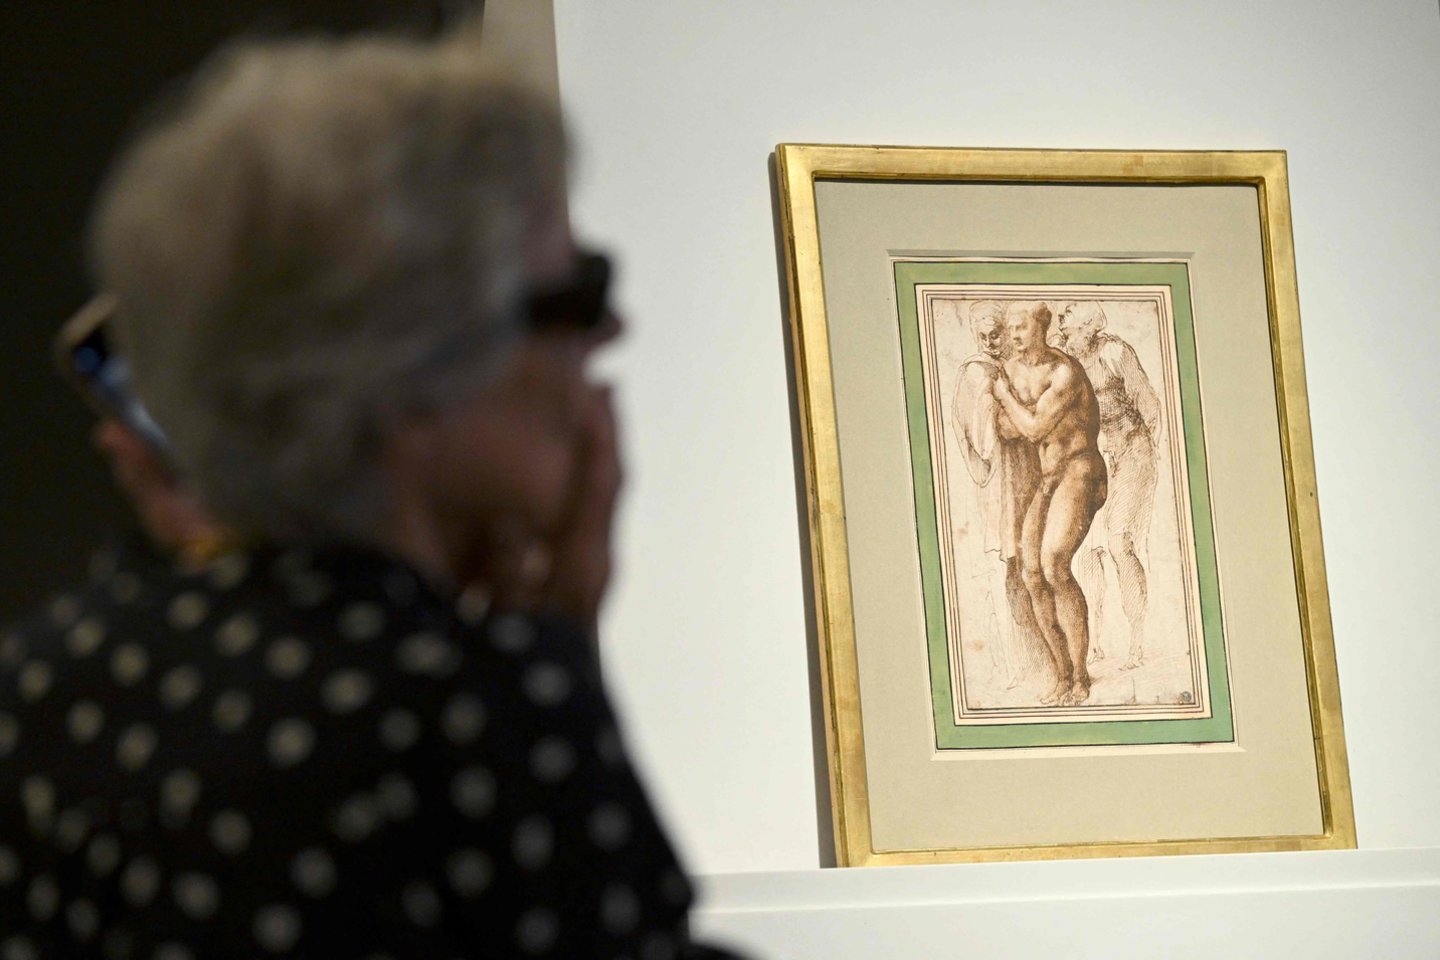 Neseniai aptiktas Michelangelo eskizas – pirmasis, kuriame dailininkas pavaizdavo nuogą žmogų.<br>AFP/Scanpix nuotr.